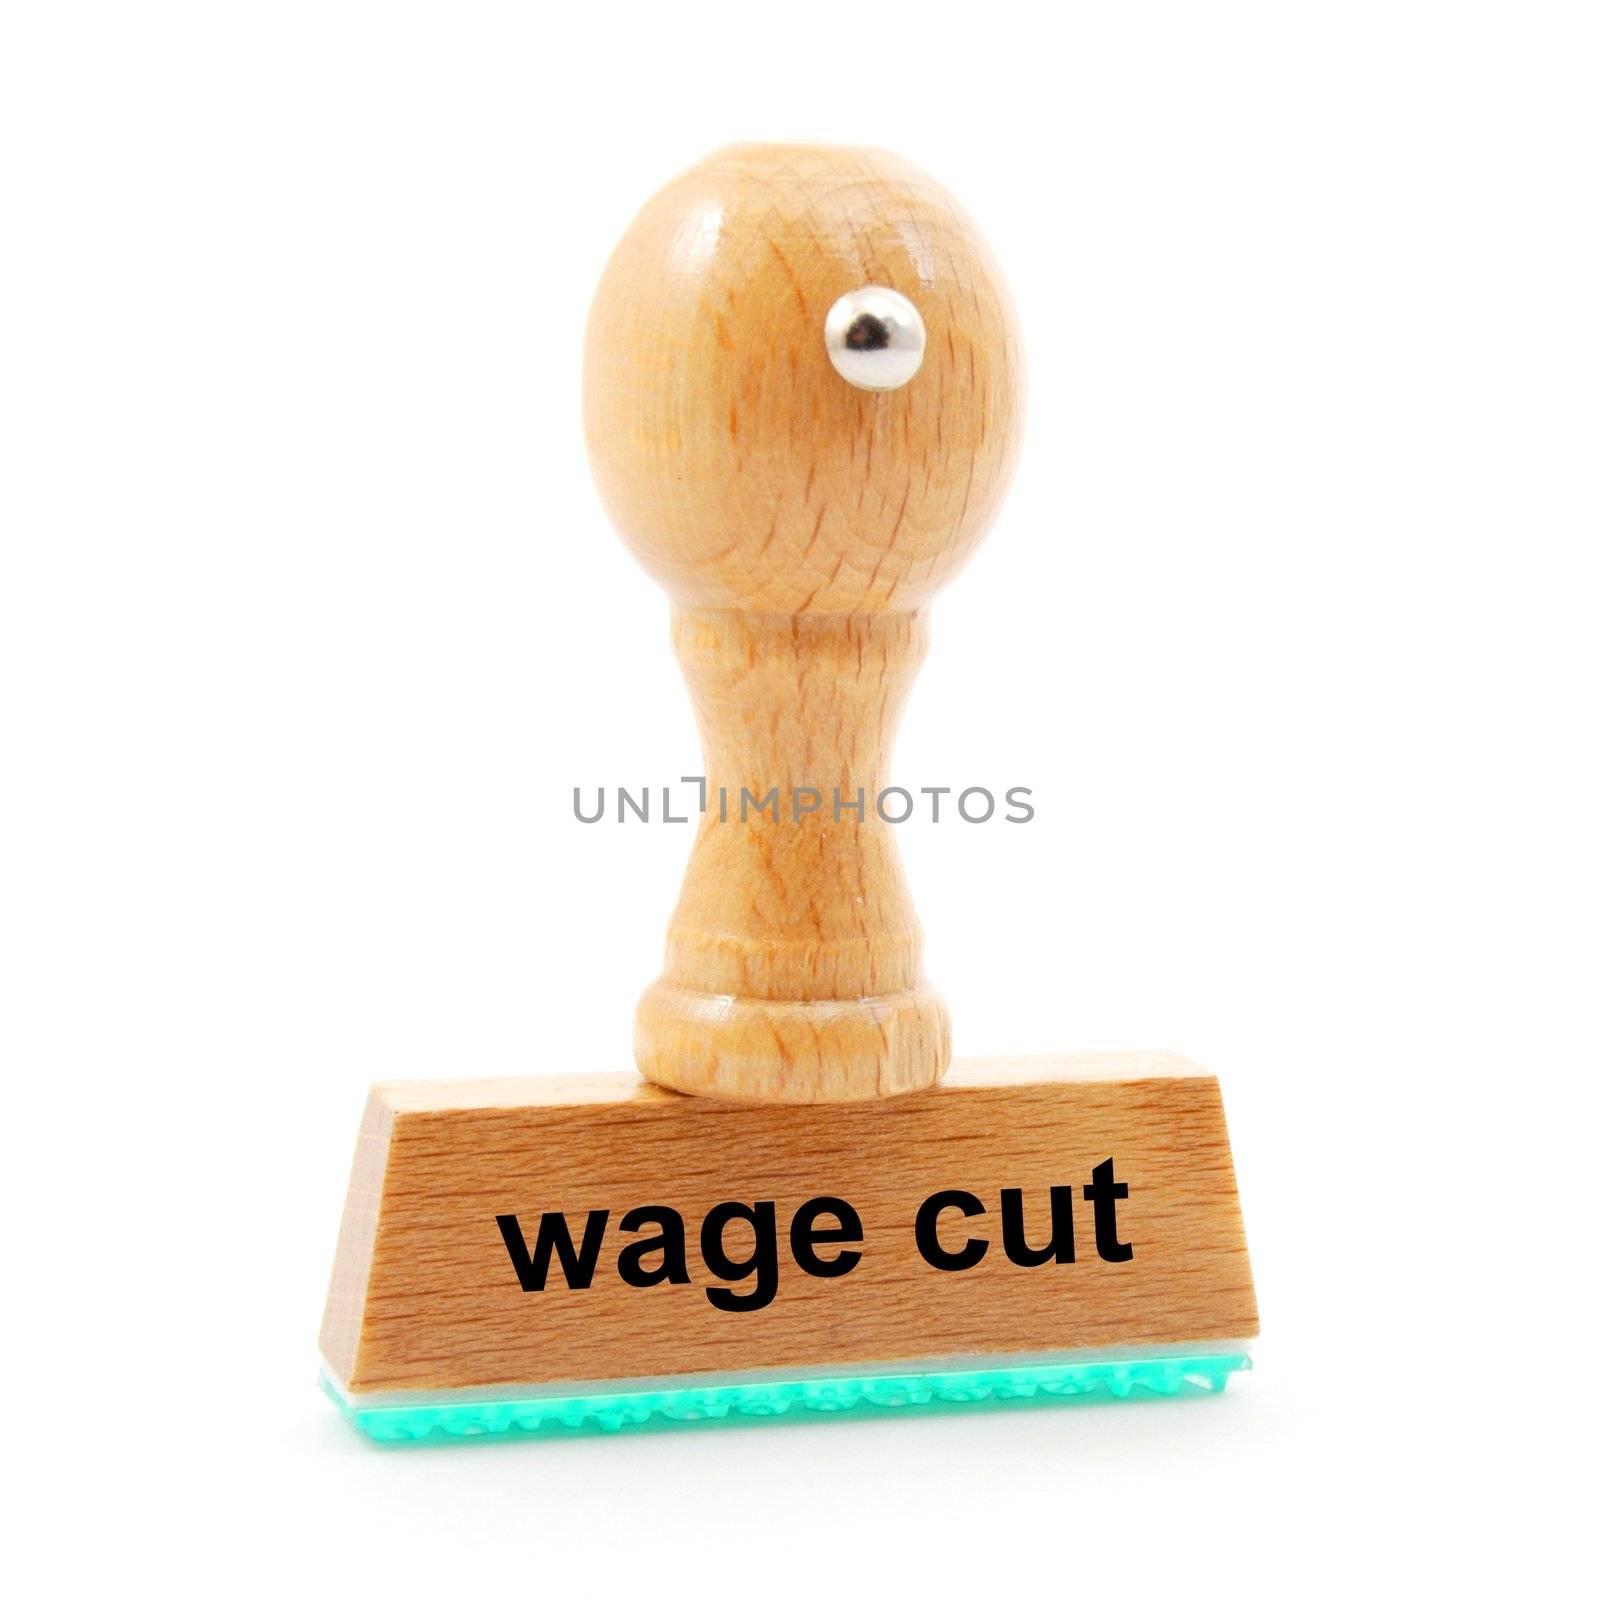 wage cut by gunnar3000